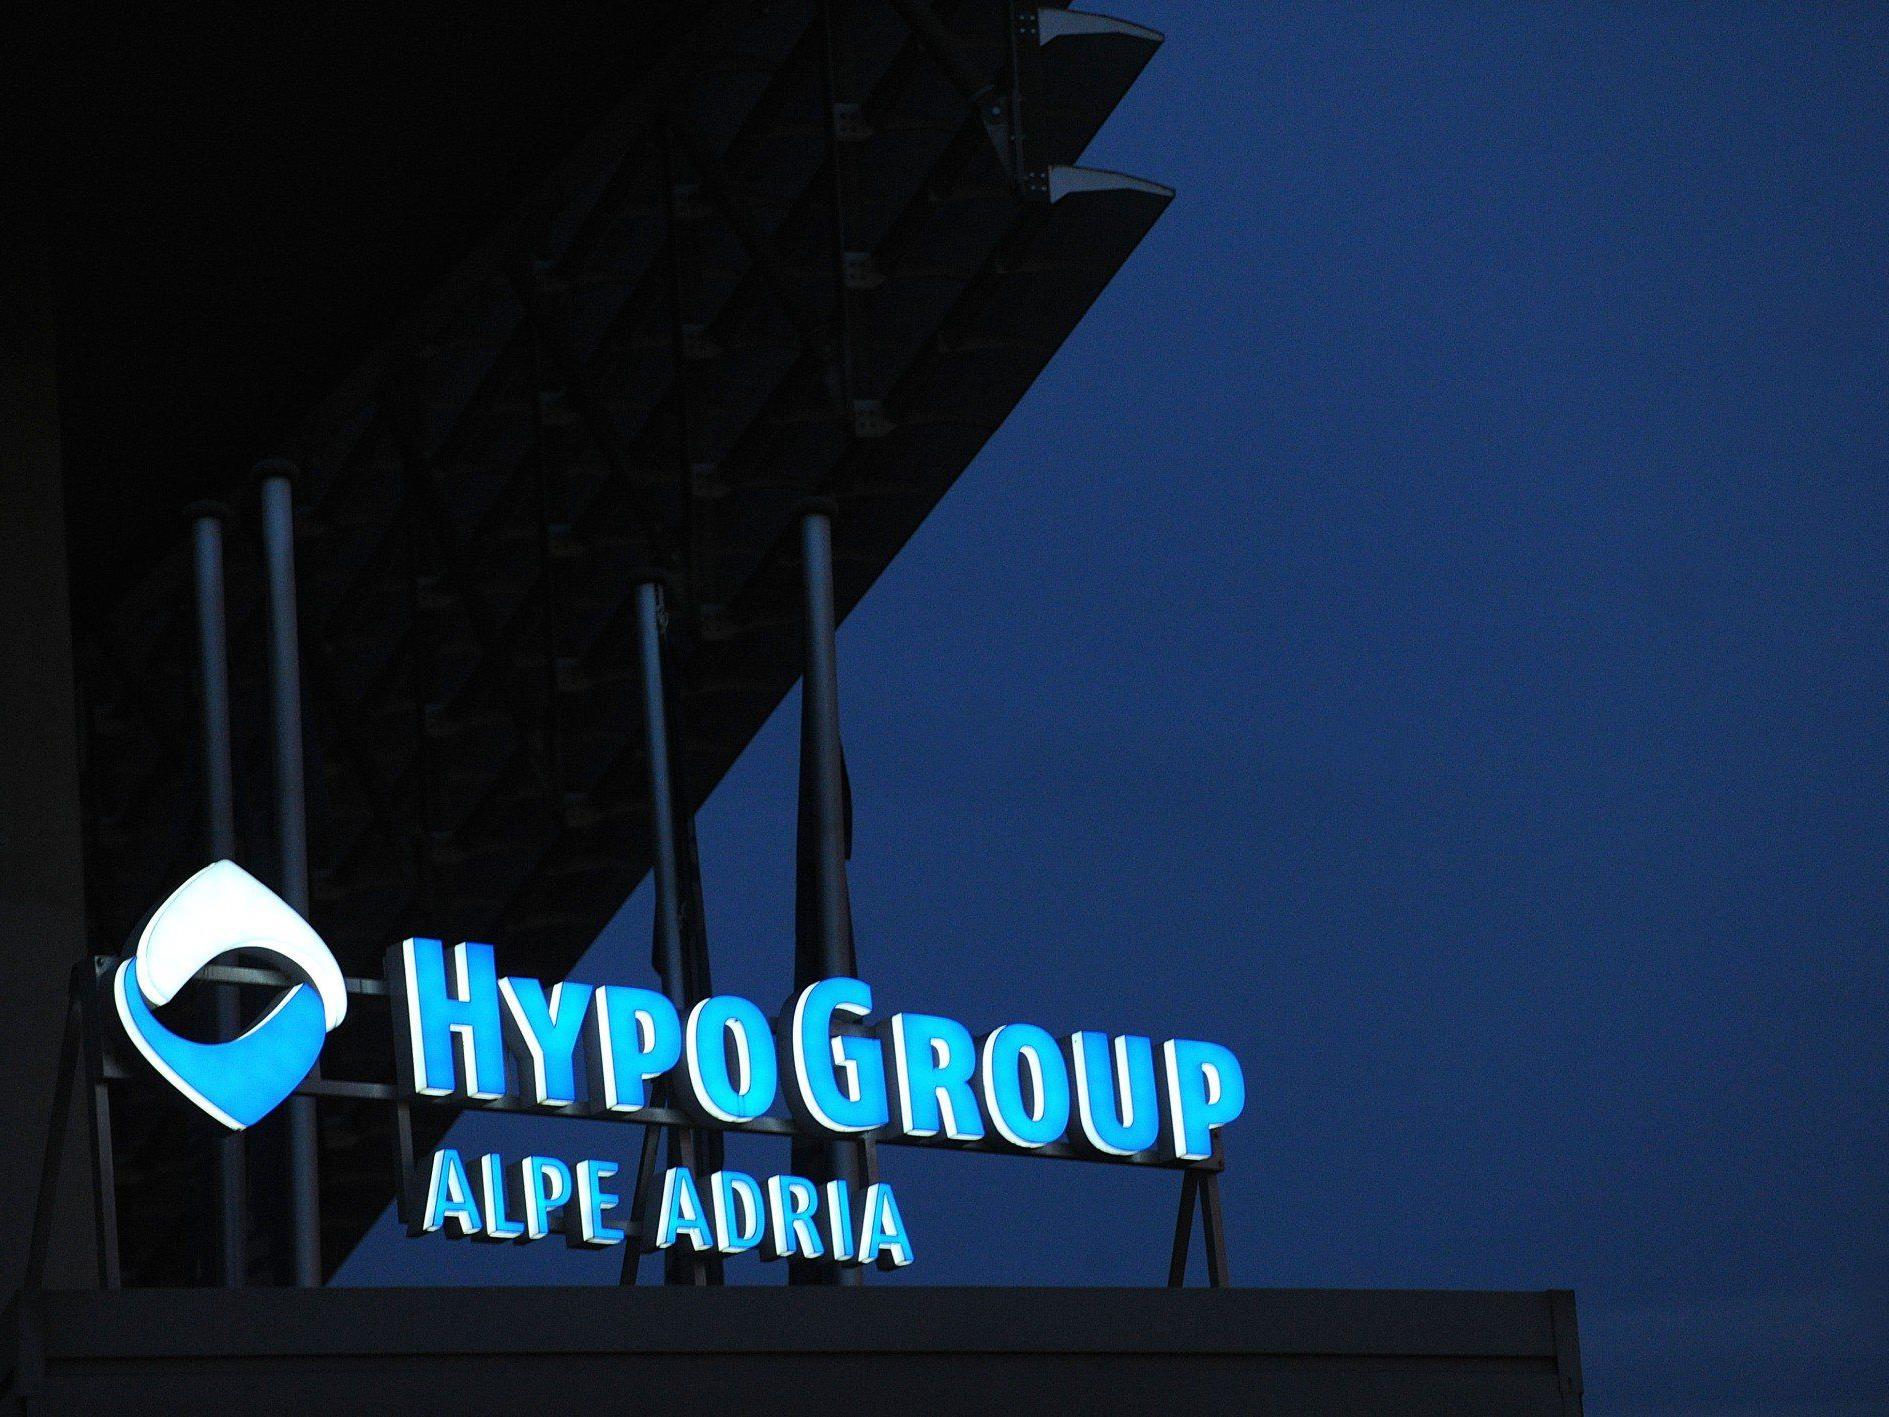 Kein Licht am Horizont - die Hypo Alpe Adria verlor 860 Mio. Euro.